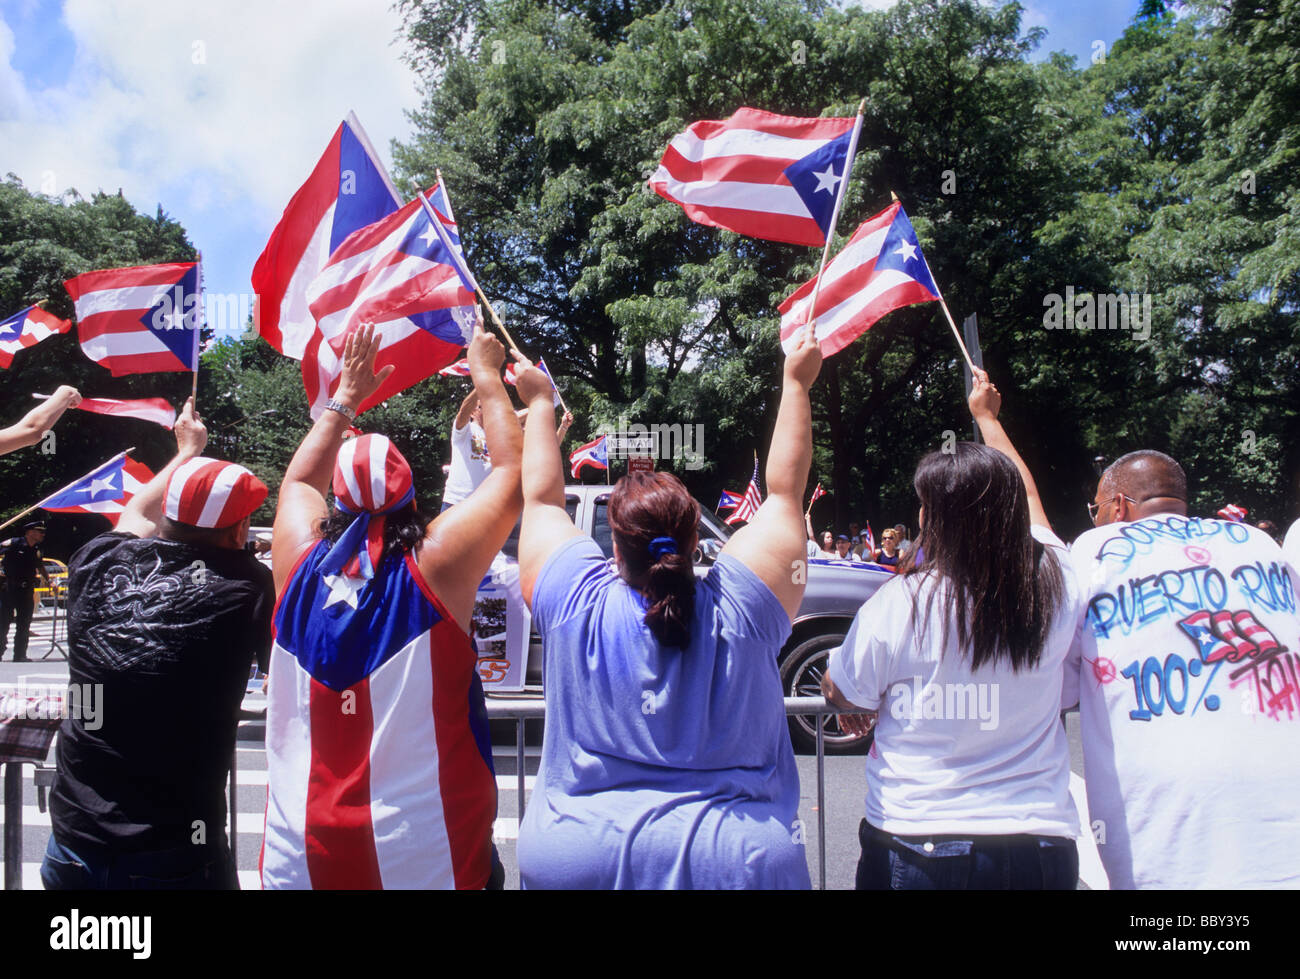 Puerto-ricanische Tagesparade. Die Menge auf der Straße jubelt und beobachtet auf der Fifth Avenue. Übergewichtige Menschen, die Puerto-ricanische Flaggen schwenken. Veranstaltung des Kulturfestivals Stockfoto